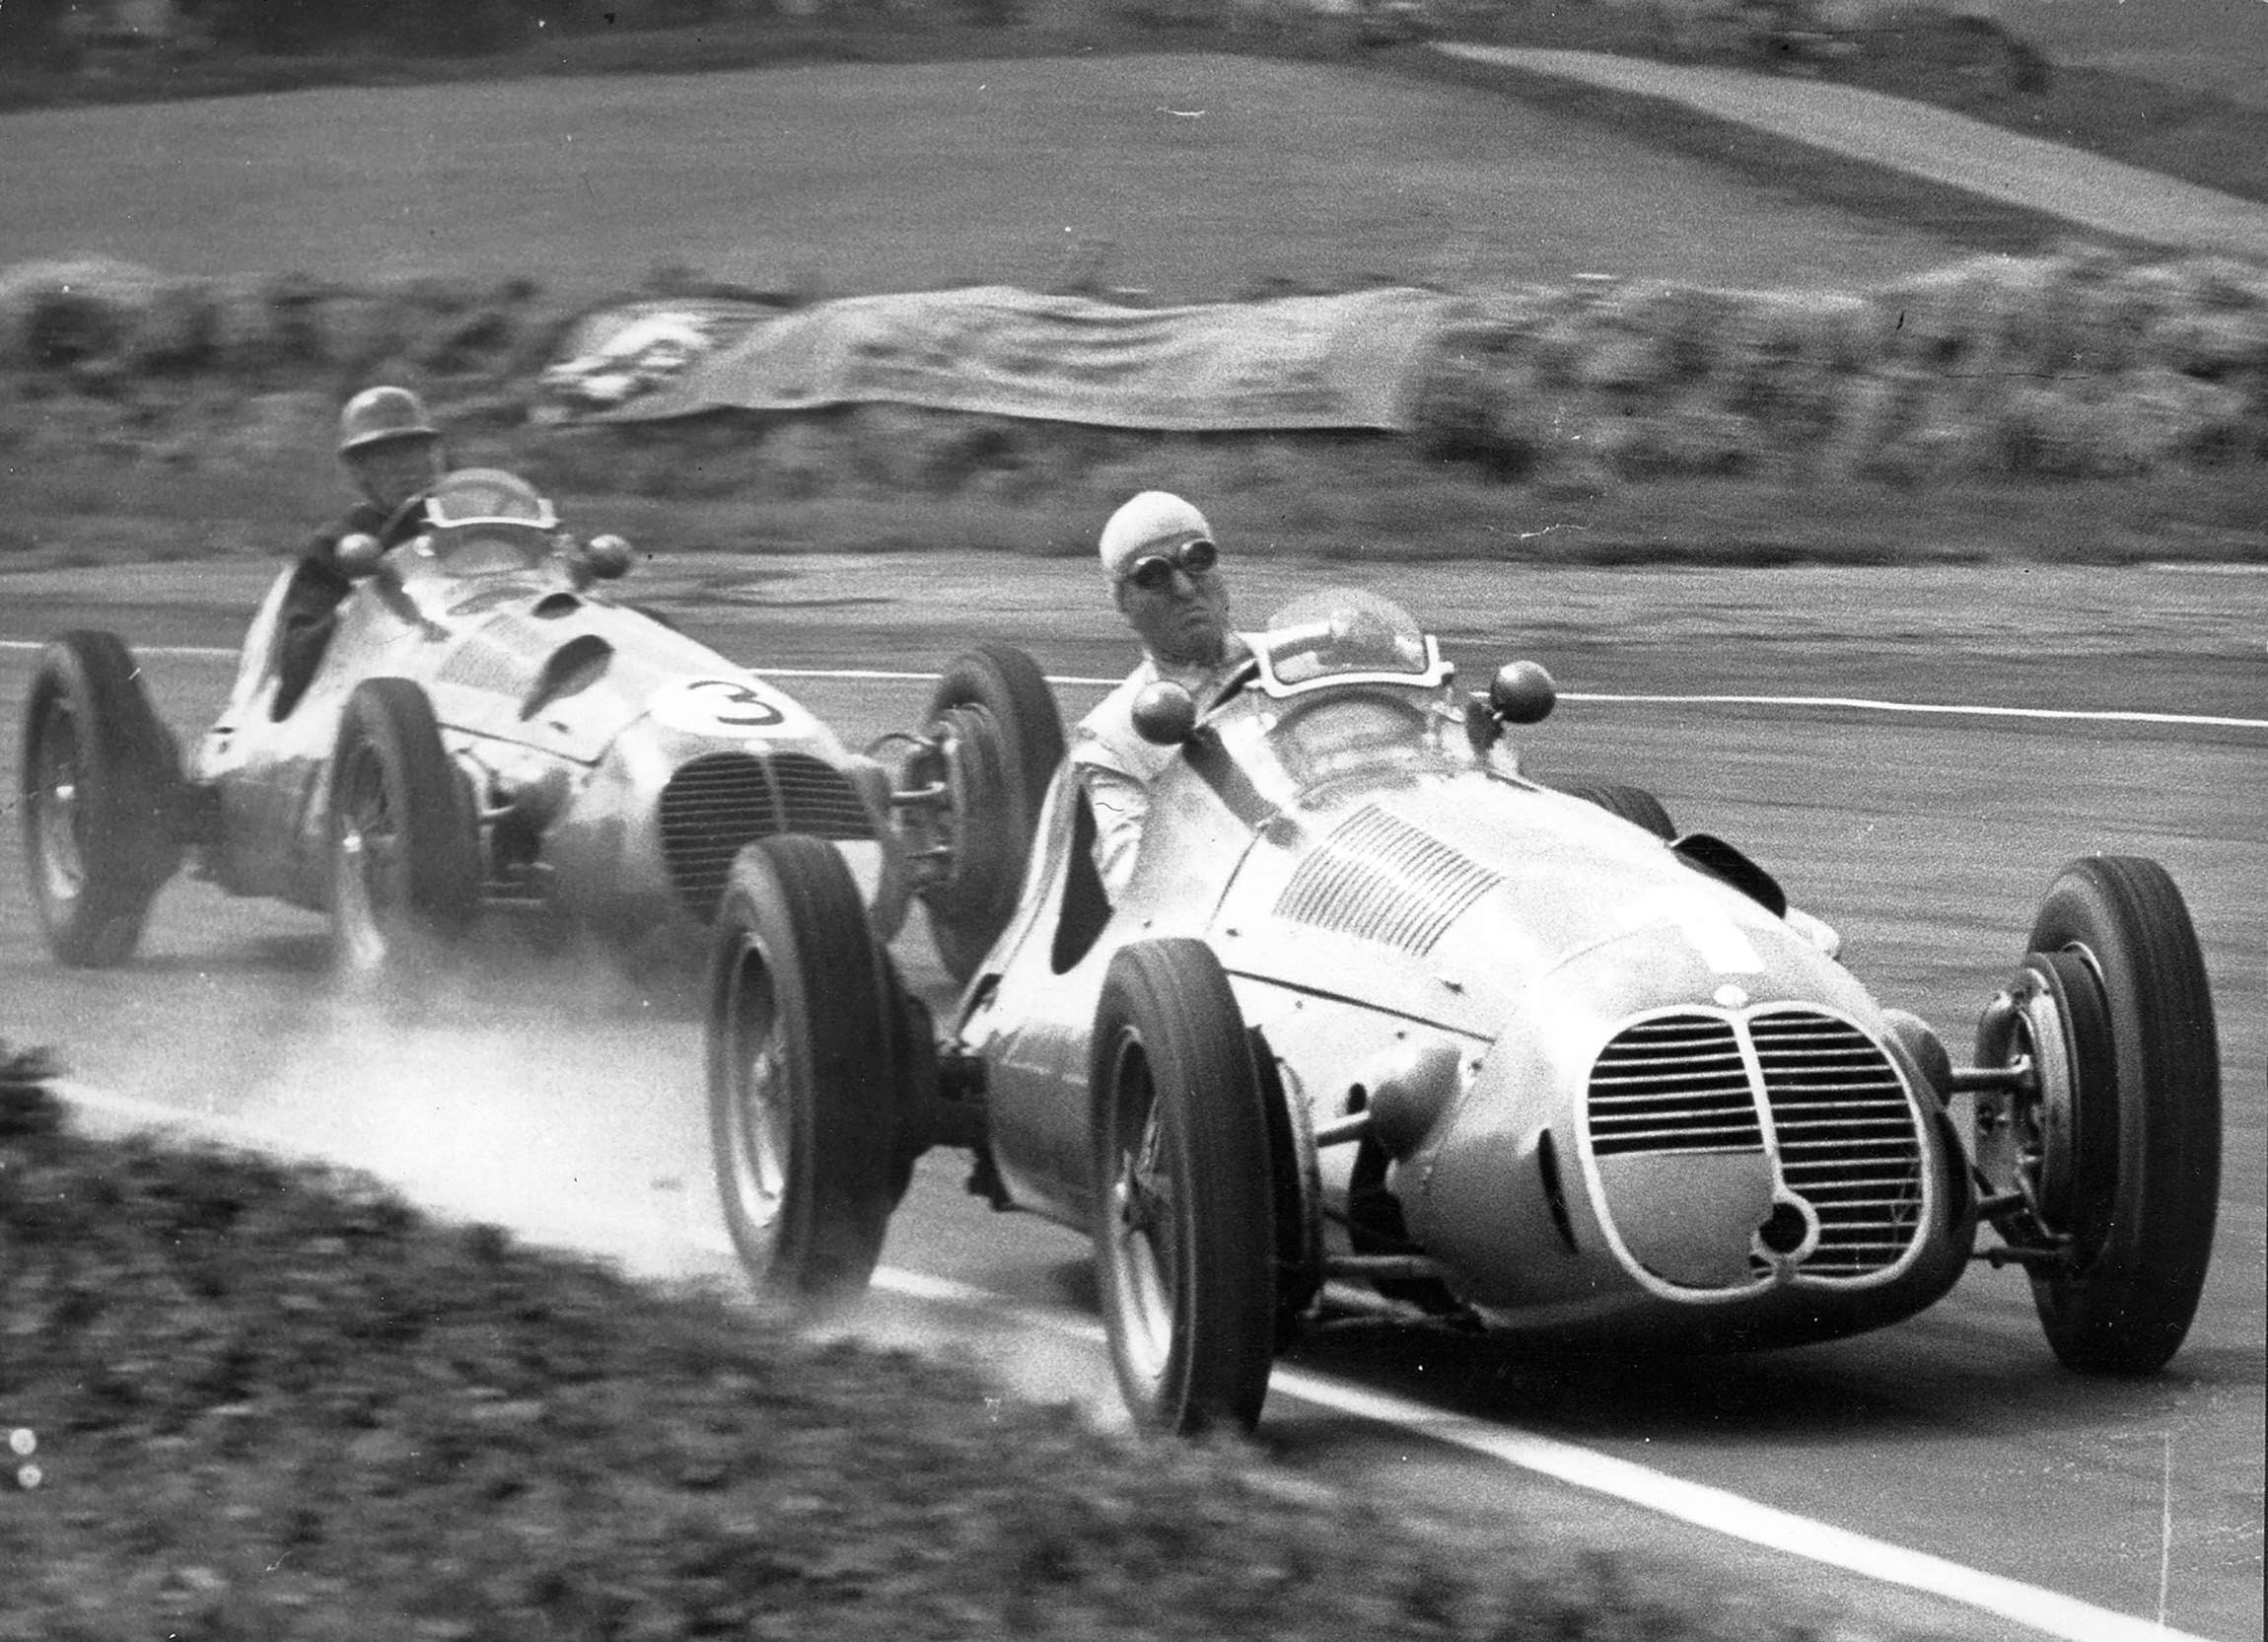 Matching Maseratis but Continental Crack versus local English also-ran - Dr Nino Farina, World Champion, laps David Hampshire at Goodwood, 1951